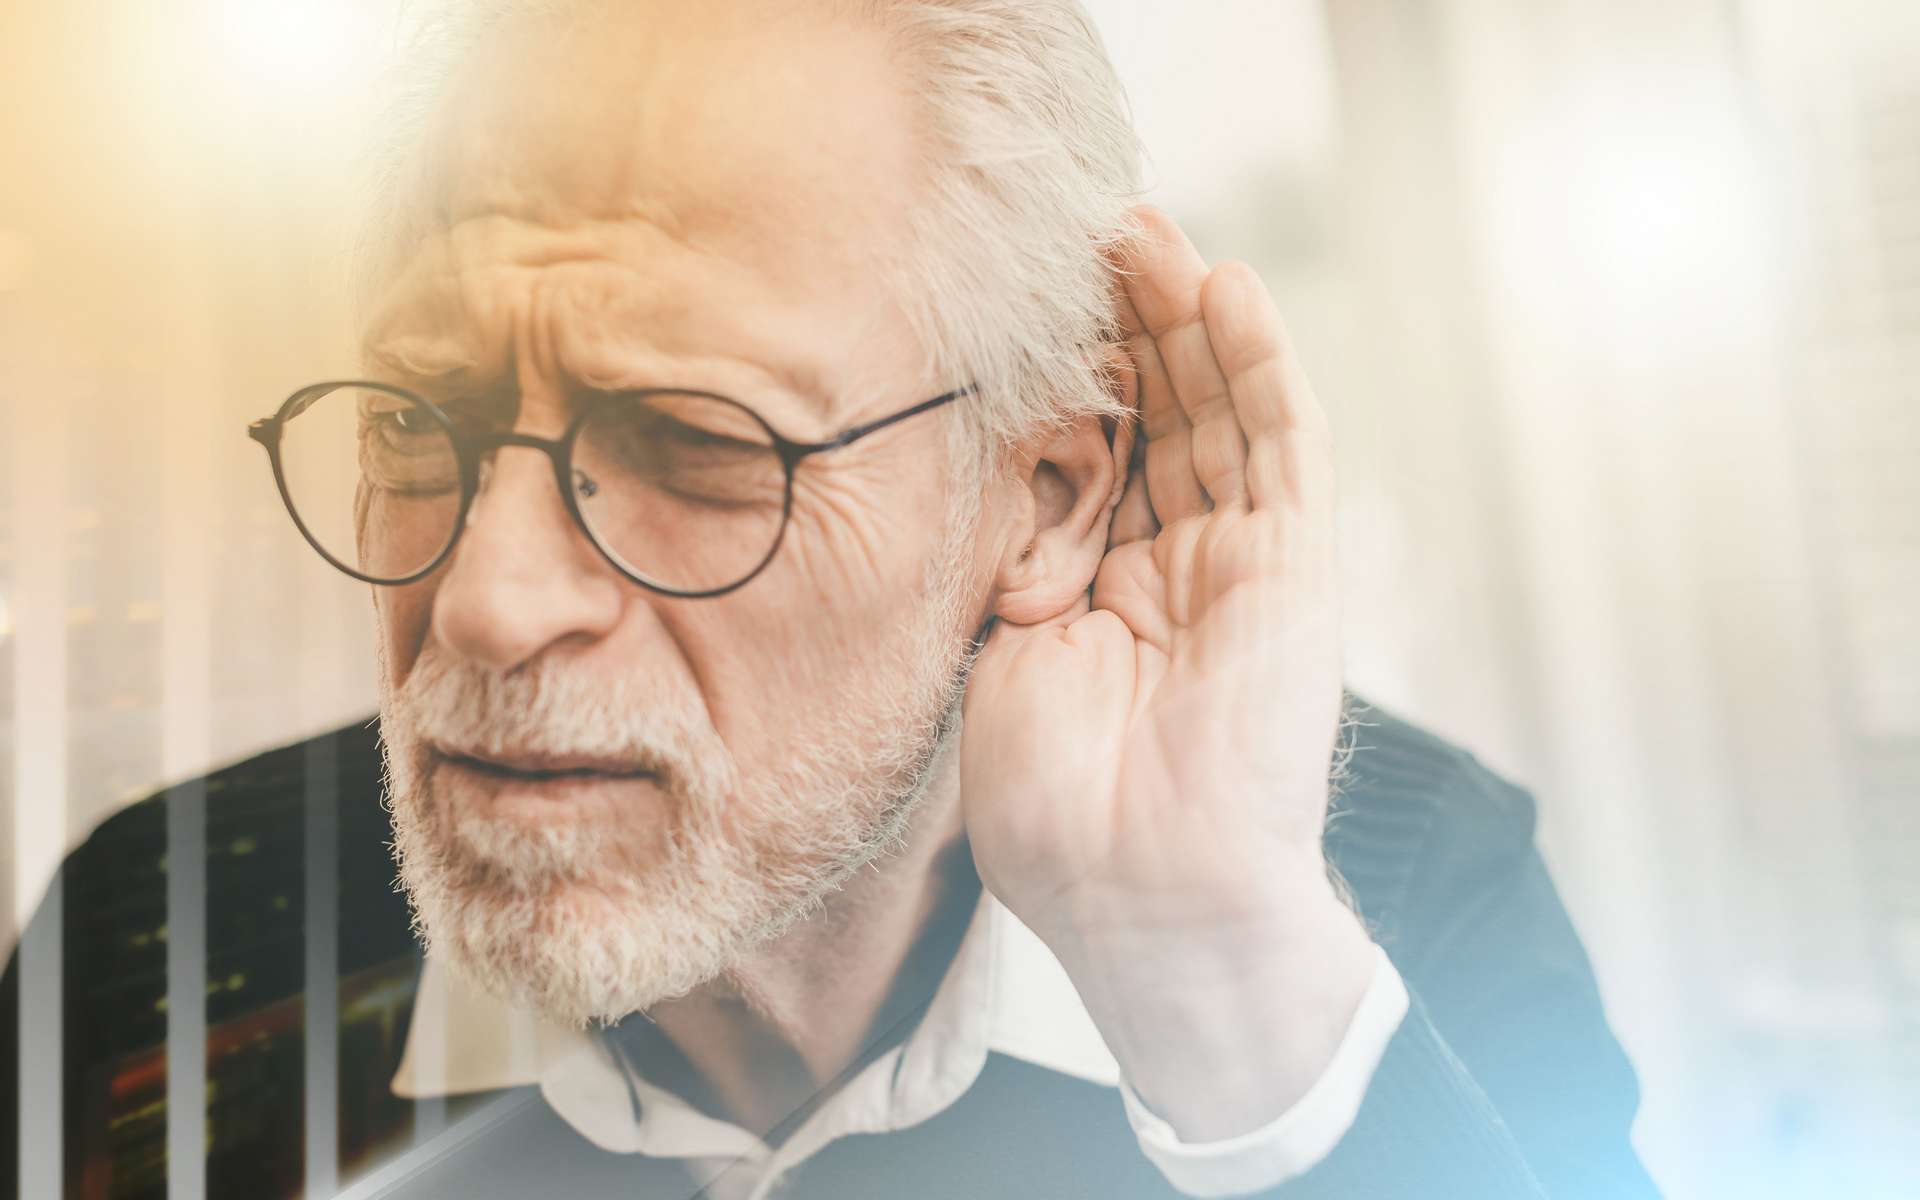 La perte d'audition liée à l'âge est extrêmement répandue. © Thodonal, Adobe Stock